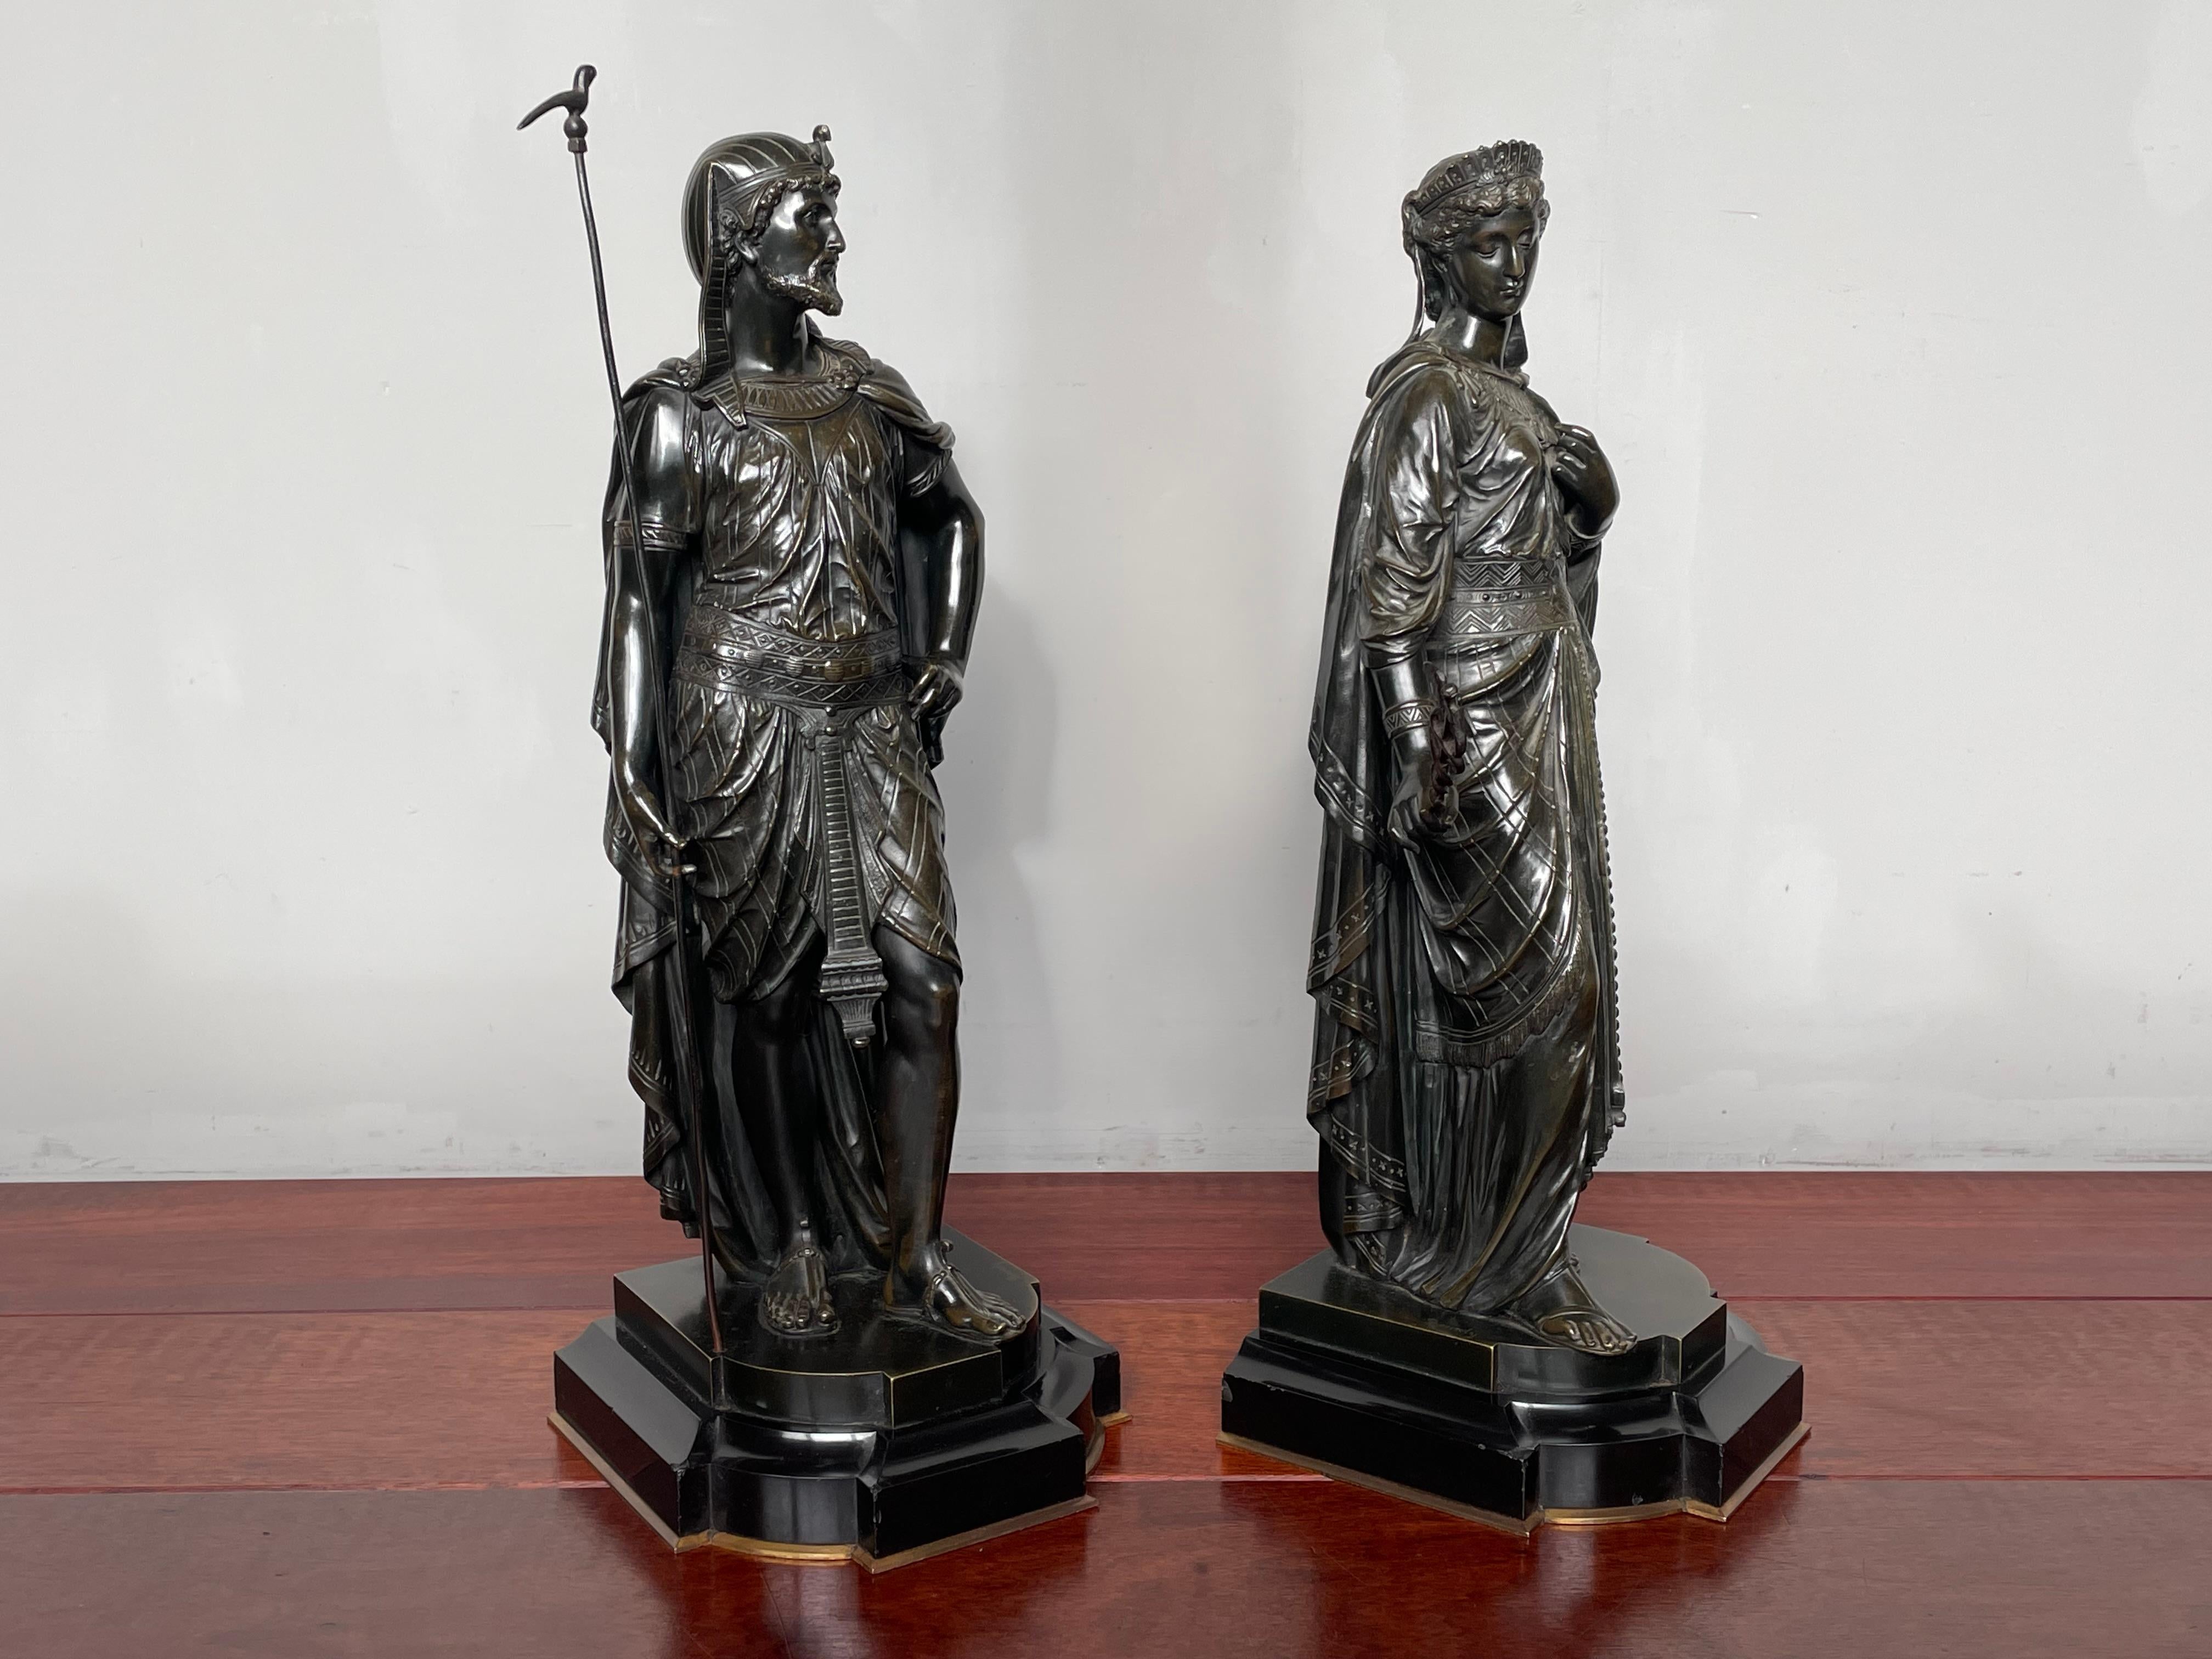 Superbe paire de statues en bronze antique de la plus haute qualité.

Si vous êtes intéressé par les antiquités exceptionnelles en général et par les antiquités néo-égyptiennes en particulier, alors cette paire étonnante et originale, fabriquée à